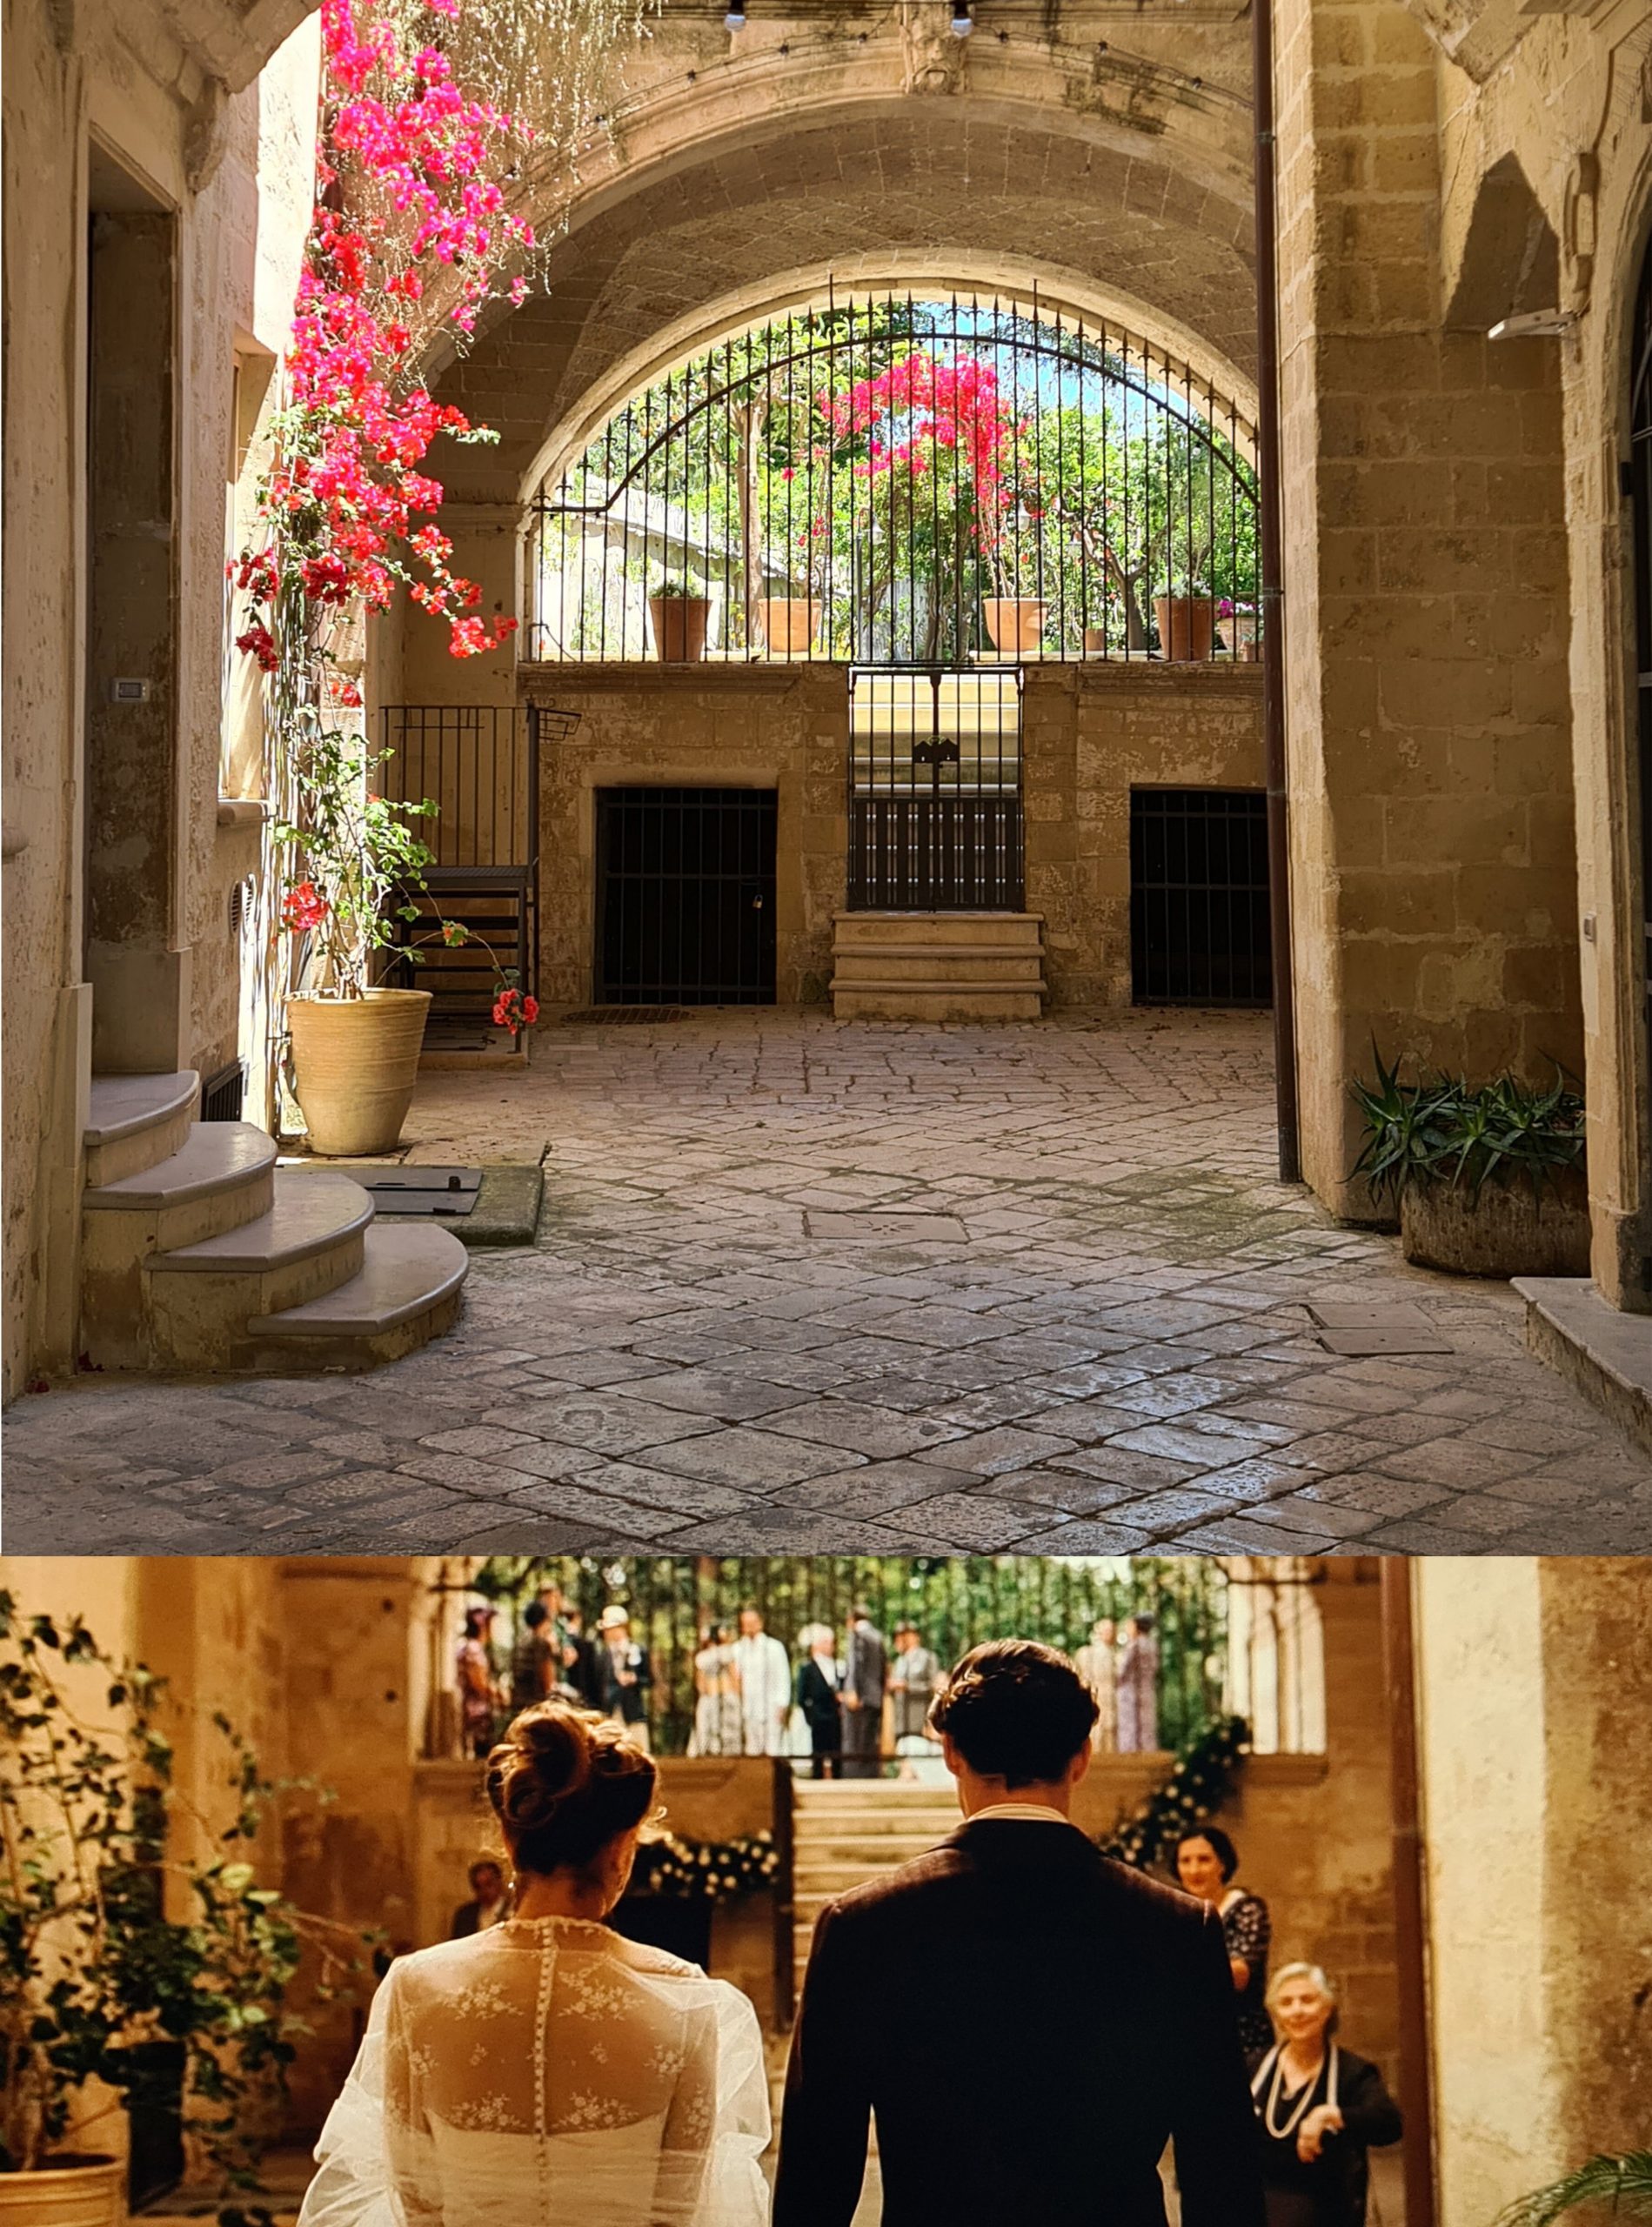 Il bellissimo atrio di Palazzo Brunetti a Lecce, con fiori rosa e un cancello che lascia intravedere il giardino